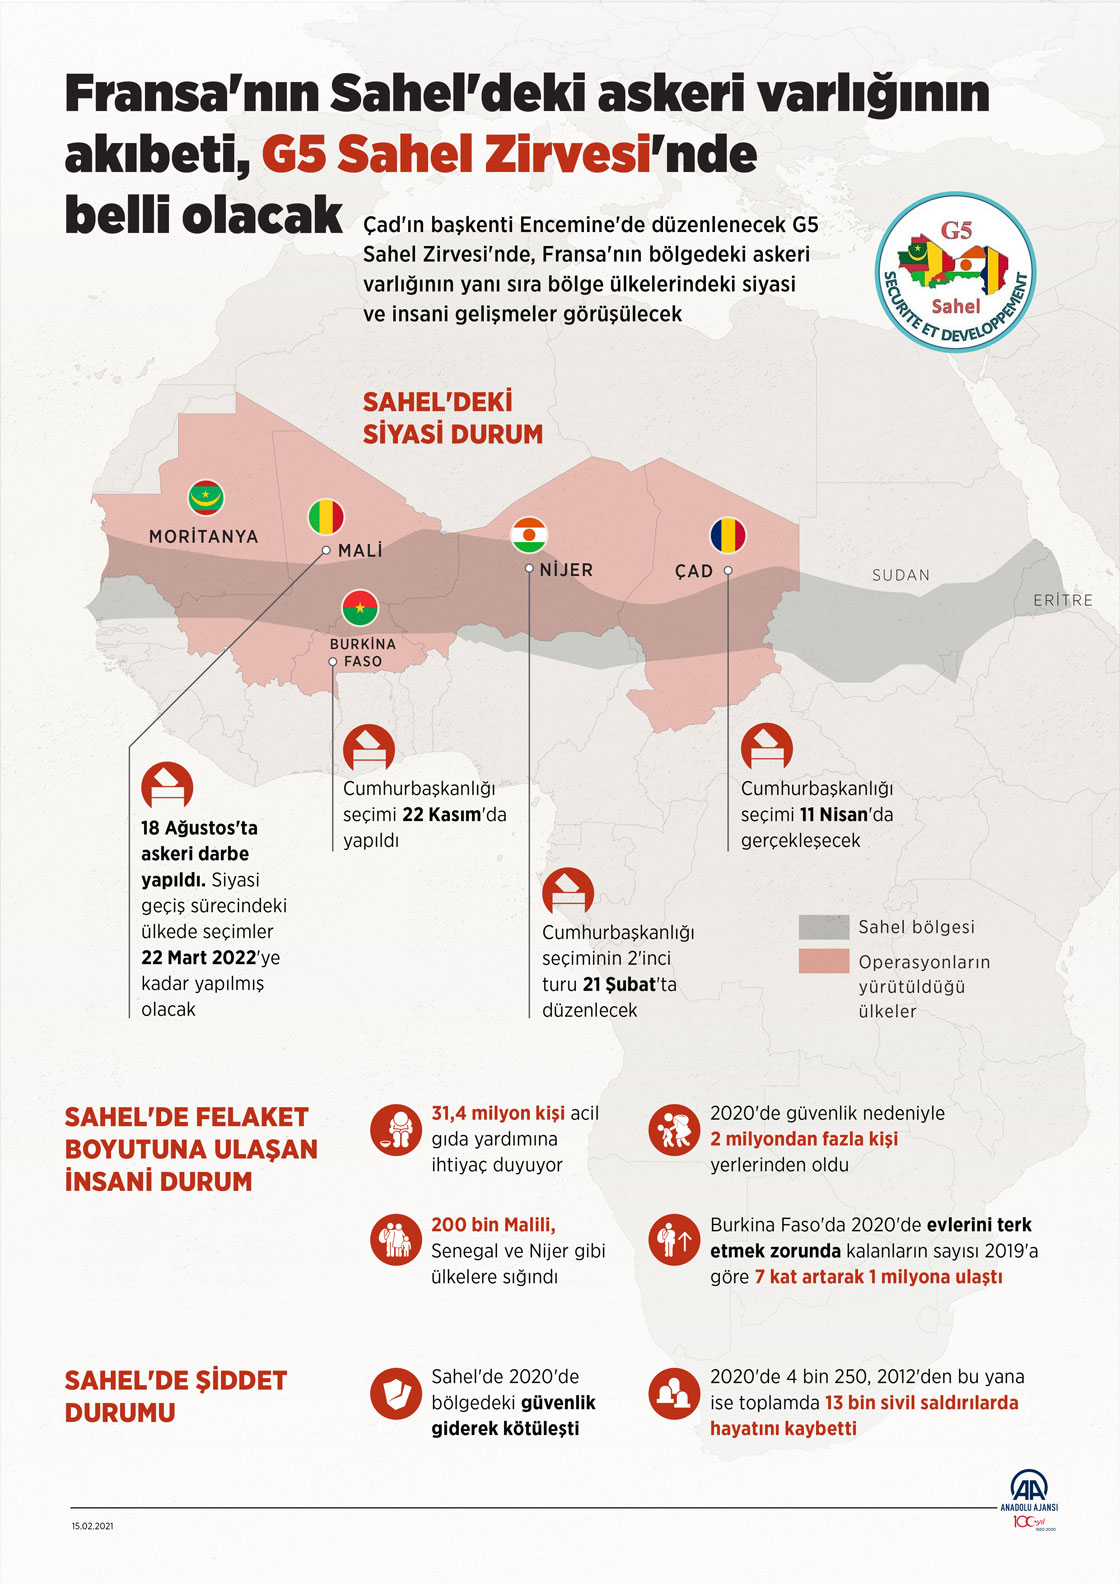 Fransa'nın Sahel'deki askeri varlığının akıbeti, G5 Sahel Zirvesi'nde belli olacak